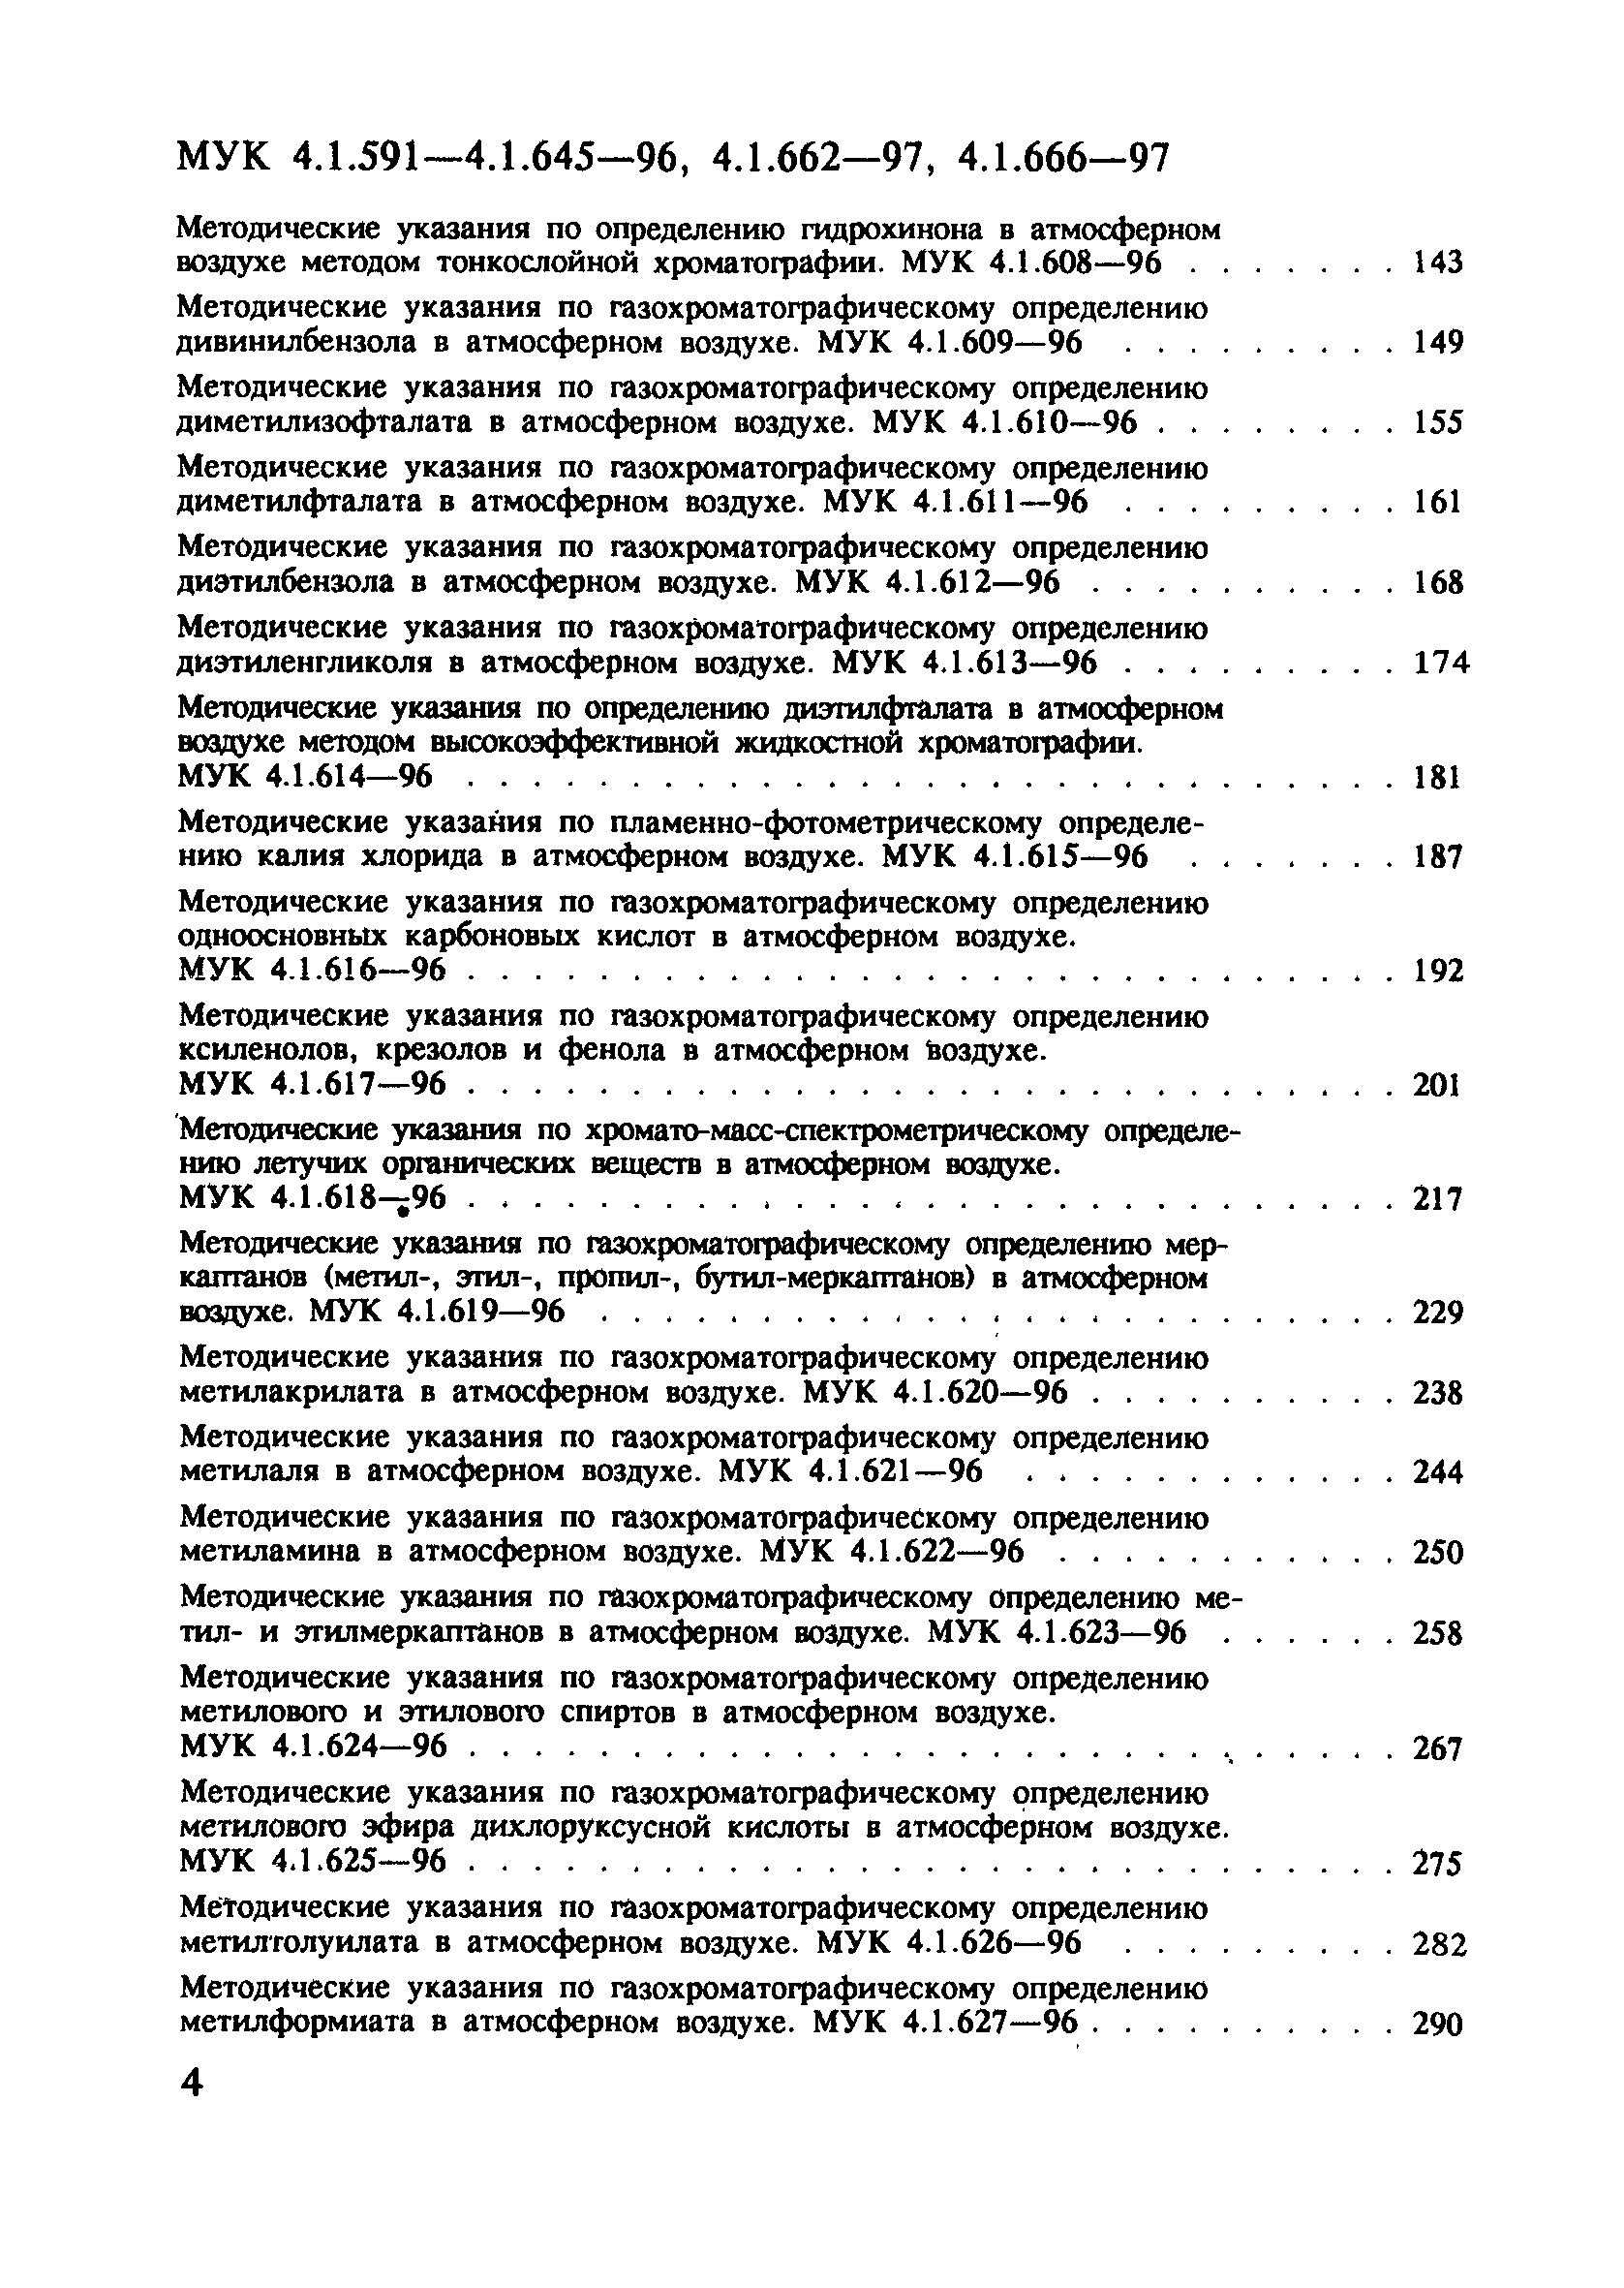 МУК 4.1.640-96